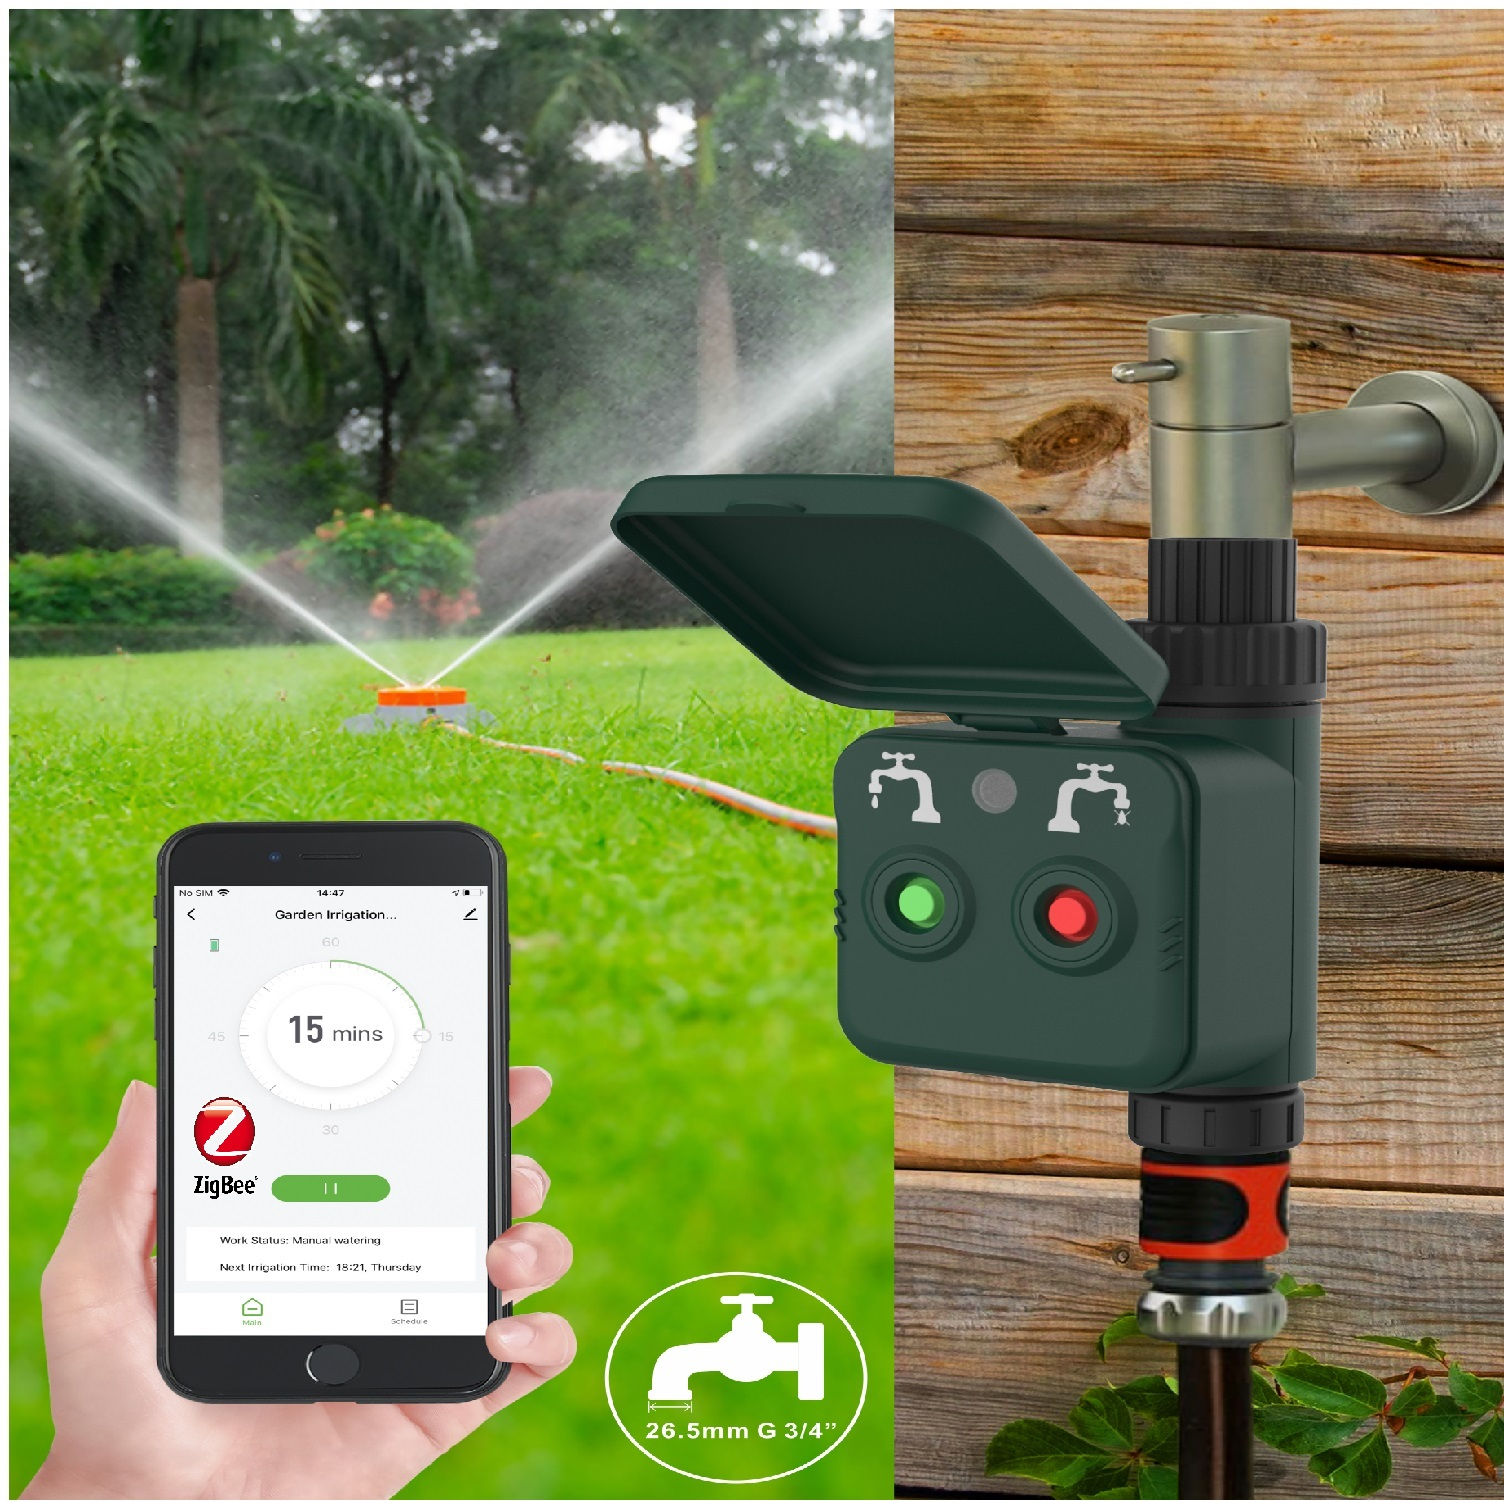 WOOX Intelligente Steuerung der NC Steuerung Intelligente Gartenbewässerung R7060 R7060 Gartenbewässerung der